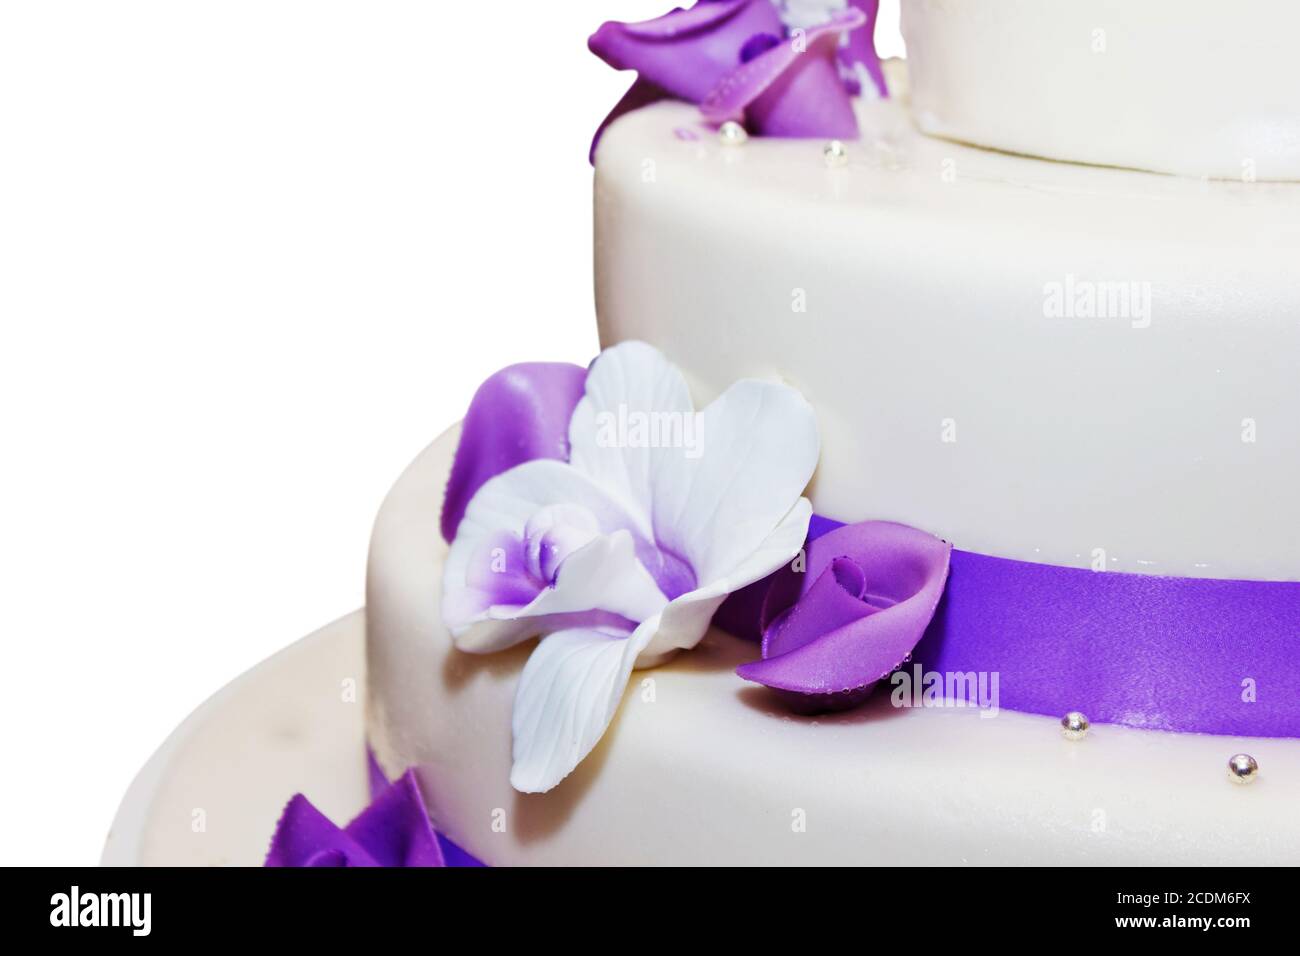 Hohen Hochzeitstorte mit lila Streifen und Blume Dekorationen Stockfoto